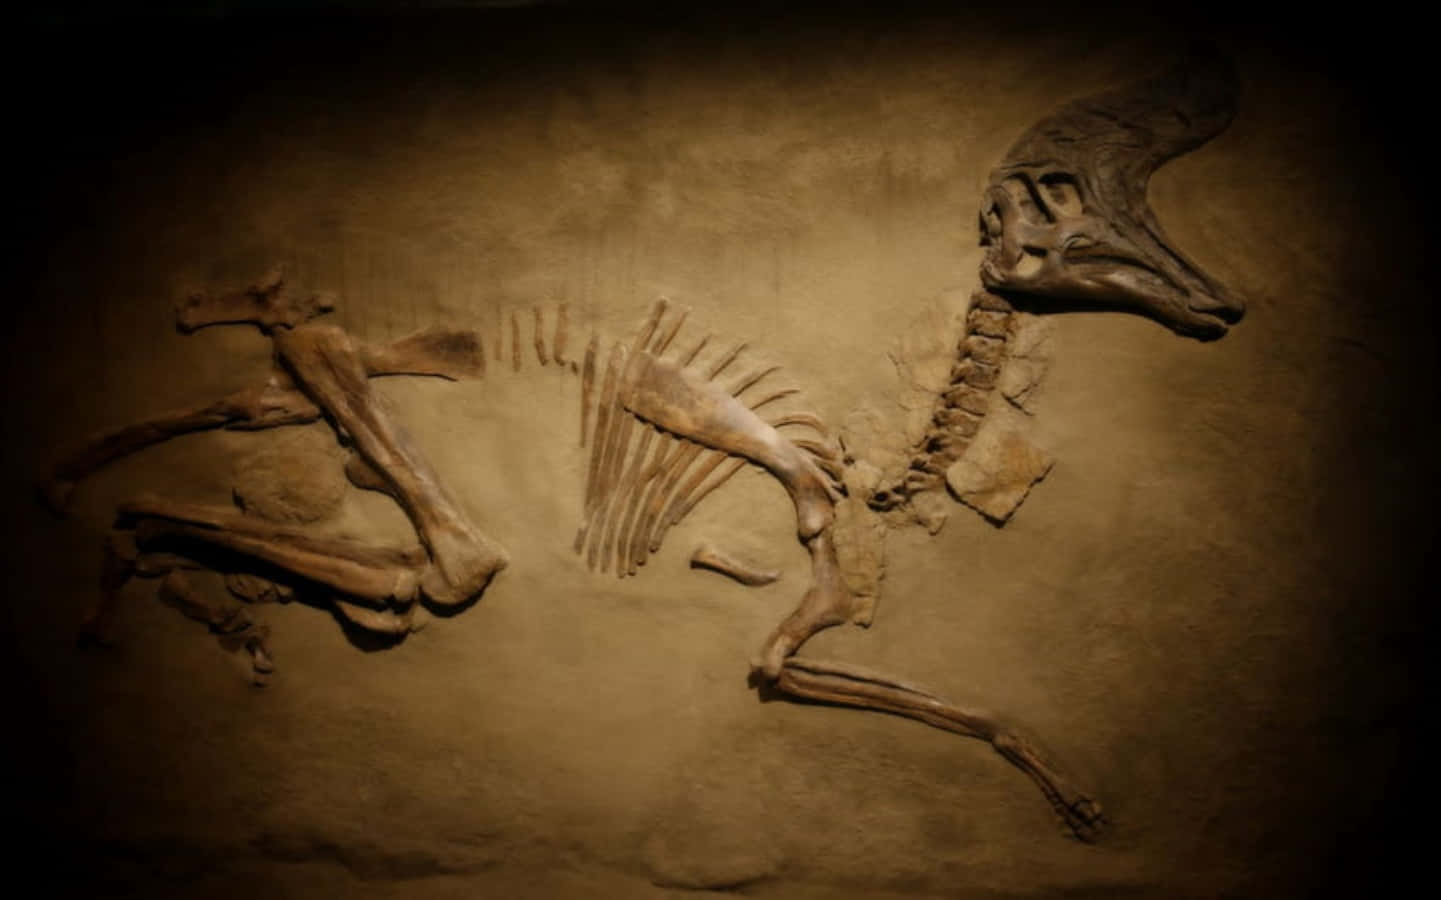 Umesqueleto De Uma Zebra É Exibido Em Um Museu.